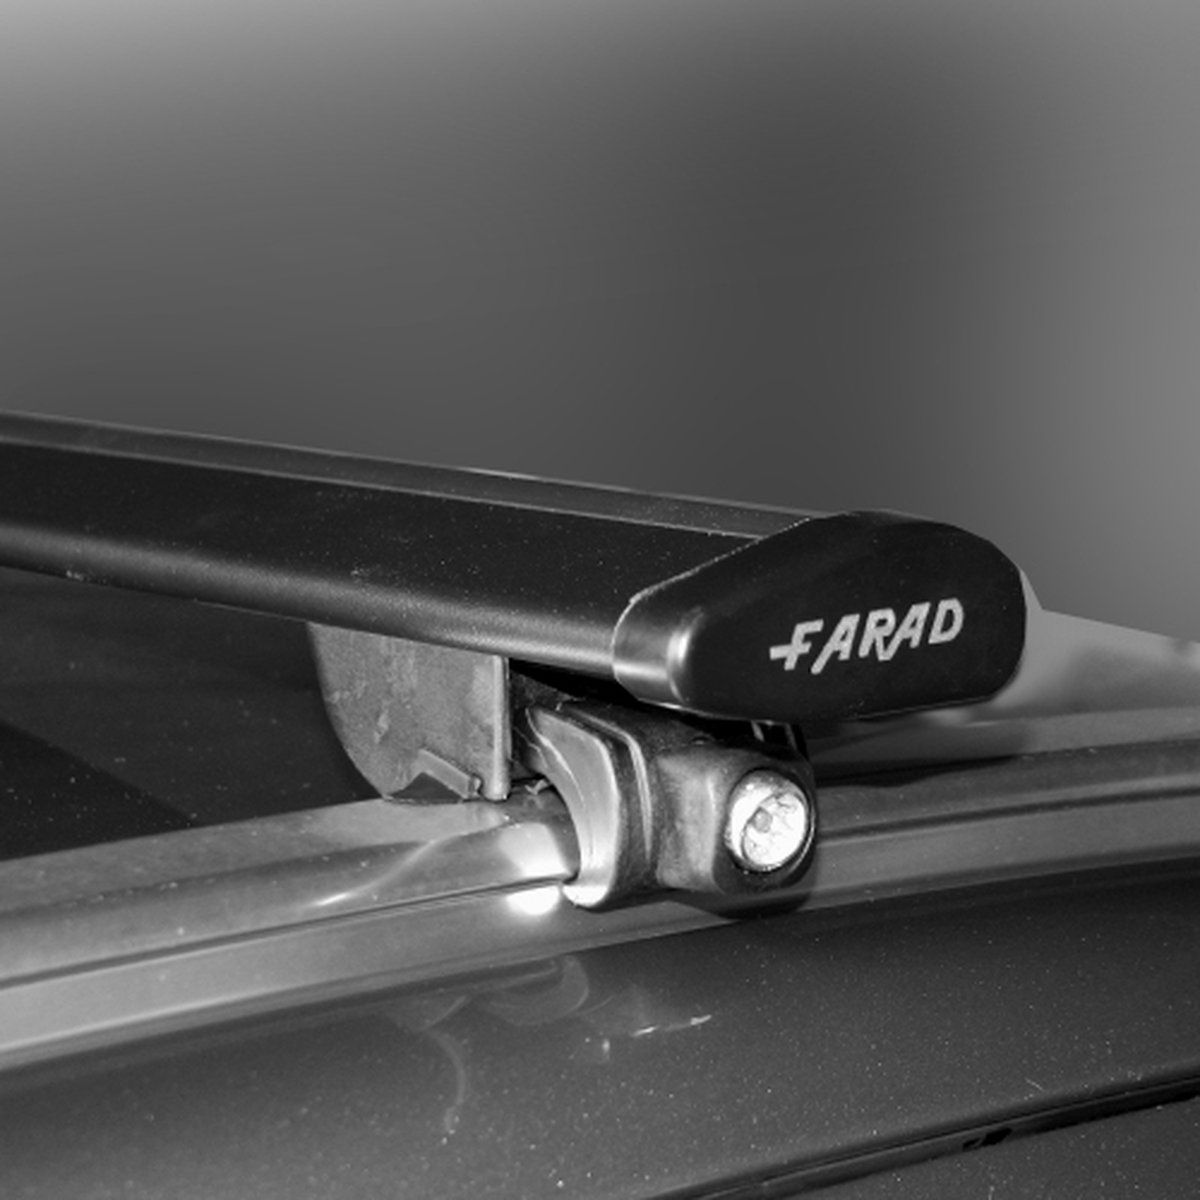 Dakdragers geschikt voor Ford Focus Sw Stationwagon 2011 t/m 2018 - Wingbar zwart - inclusief dakdrager opbergtas